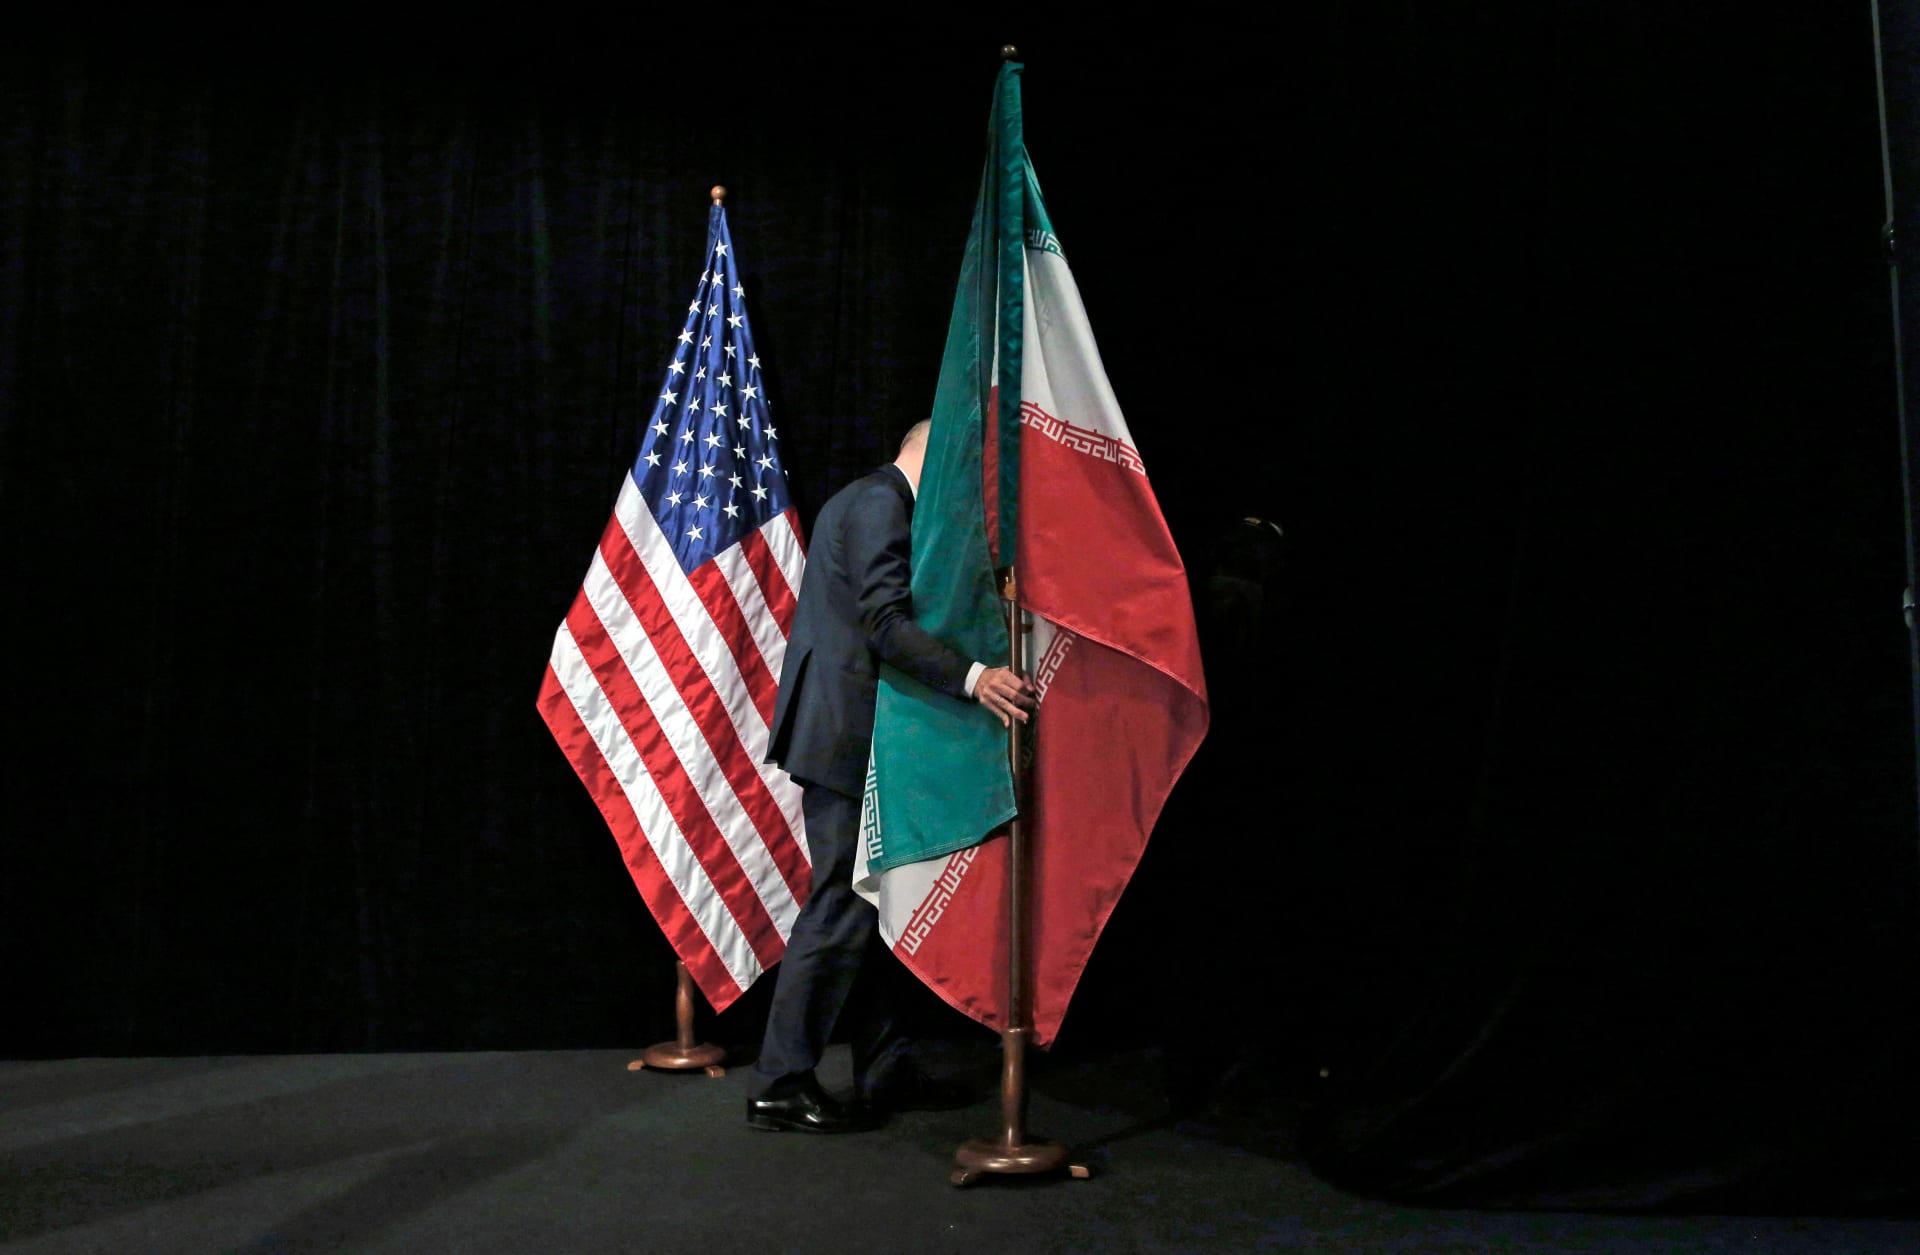 مصدر يفسر تحذير أمريكا لإيران من هجوم "داعش" رغم الخلافات بين البلدين